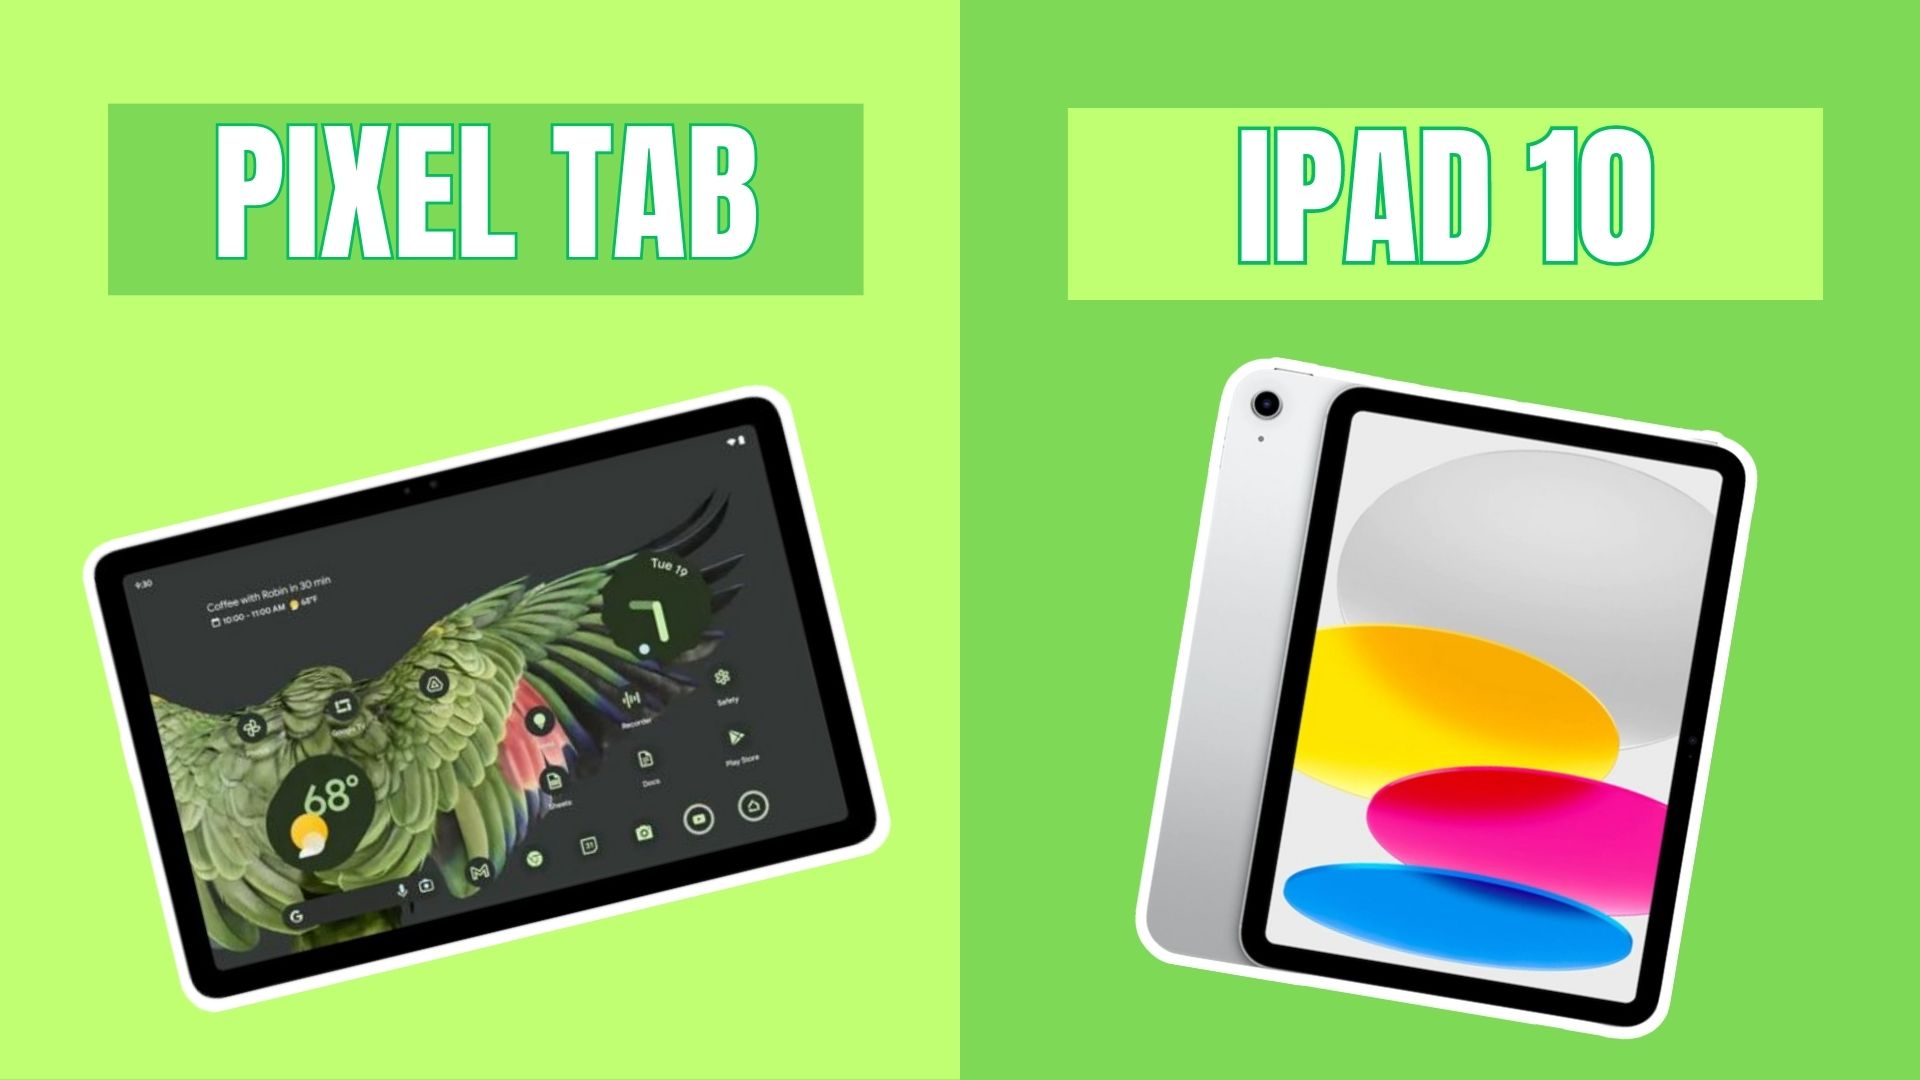 Pixel tablet vs iPad 10